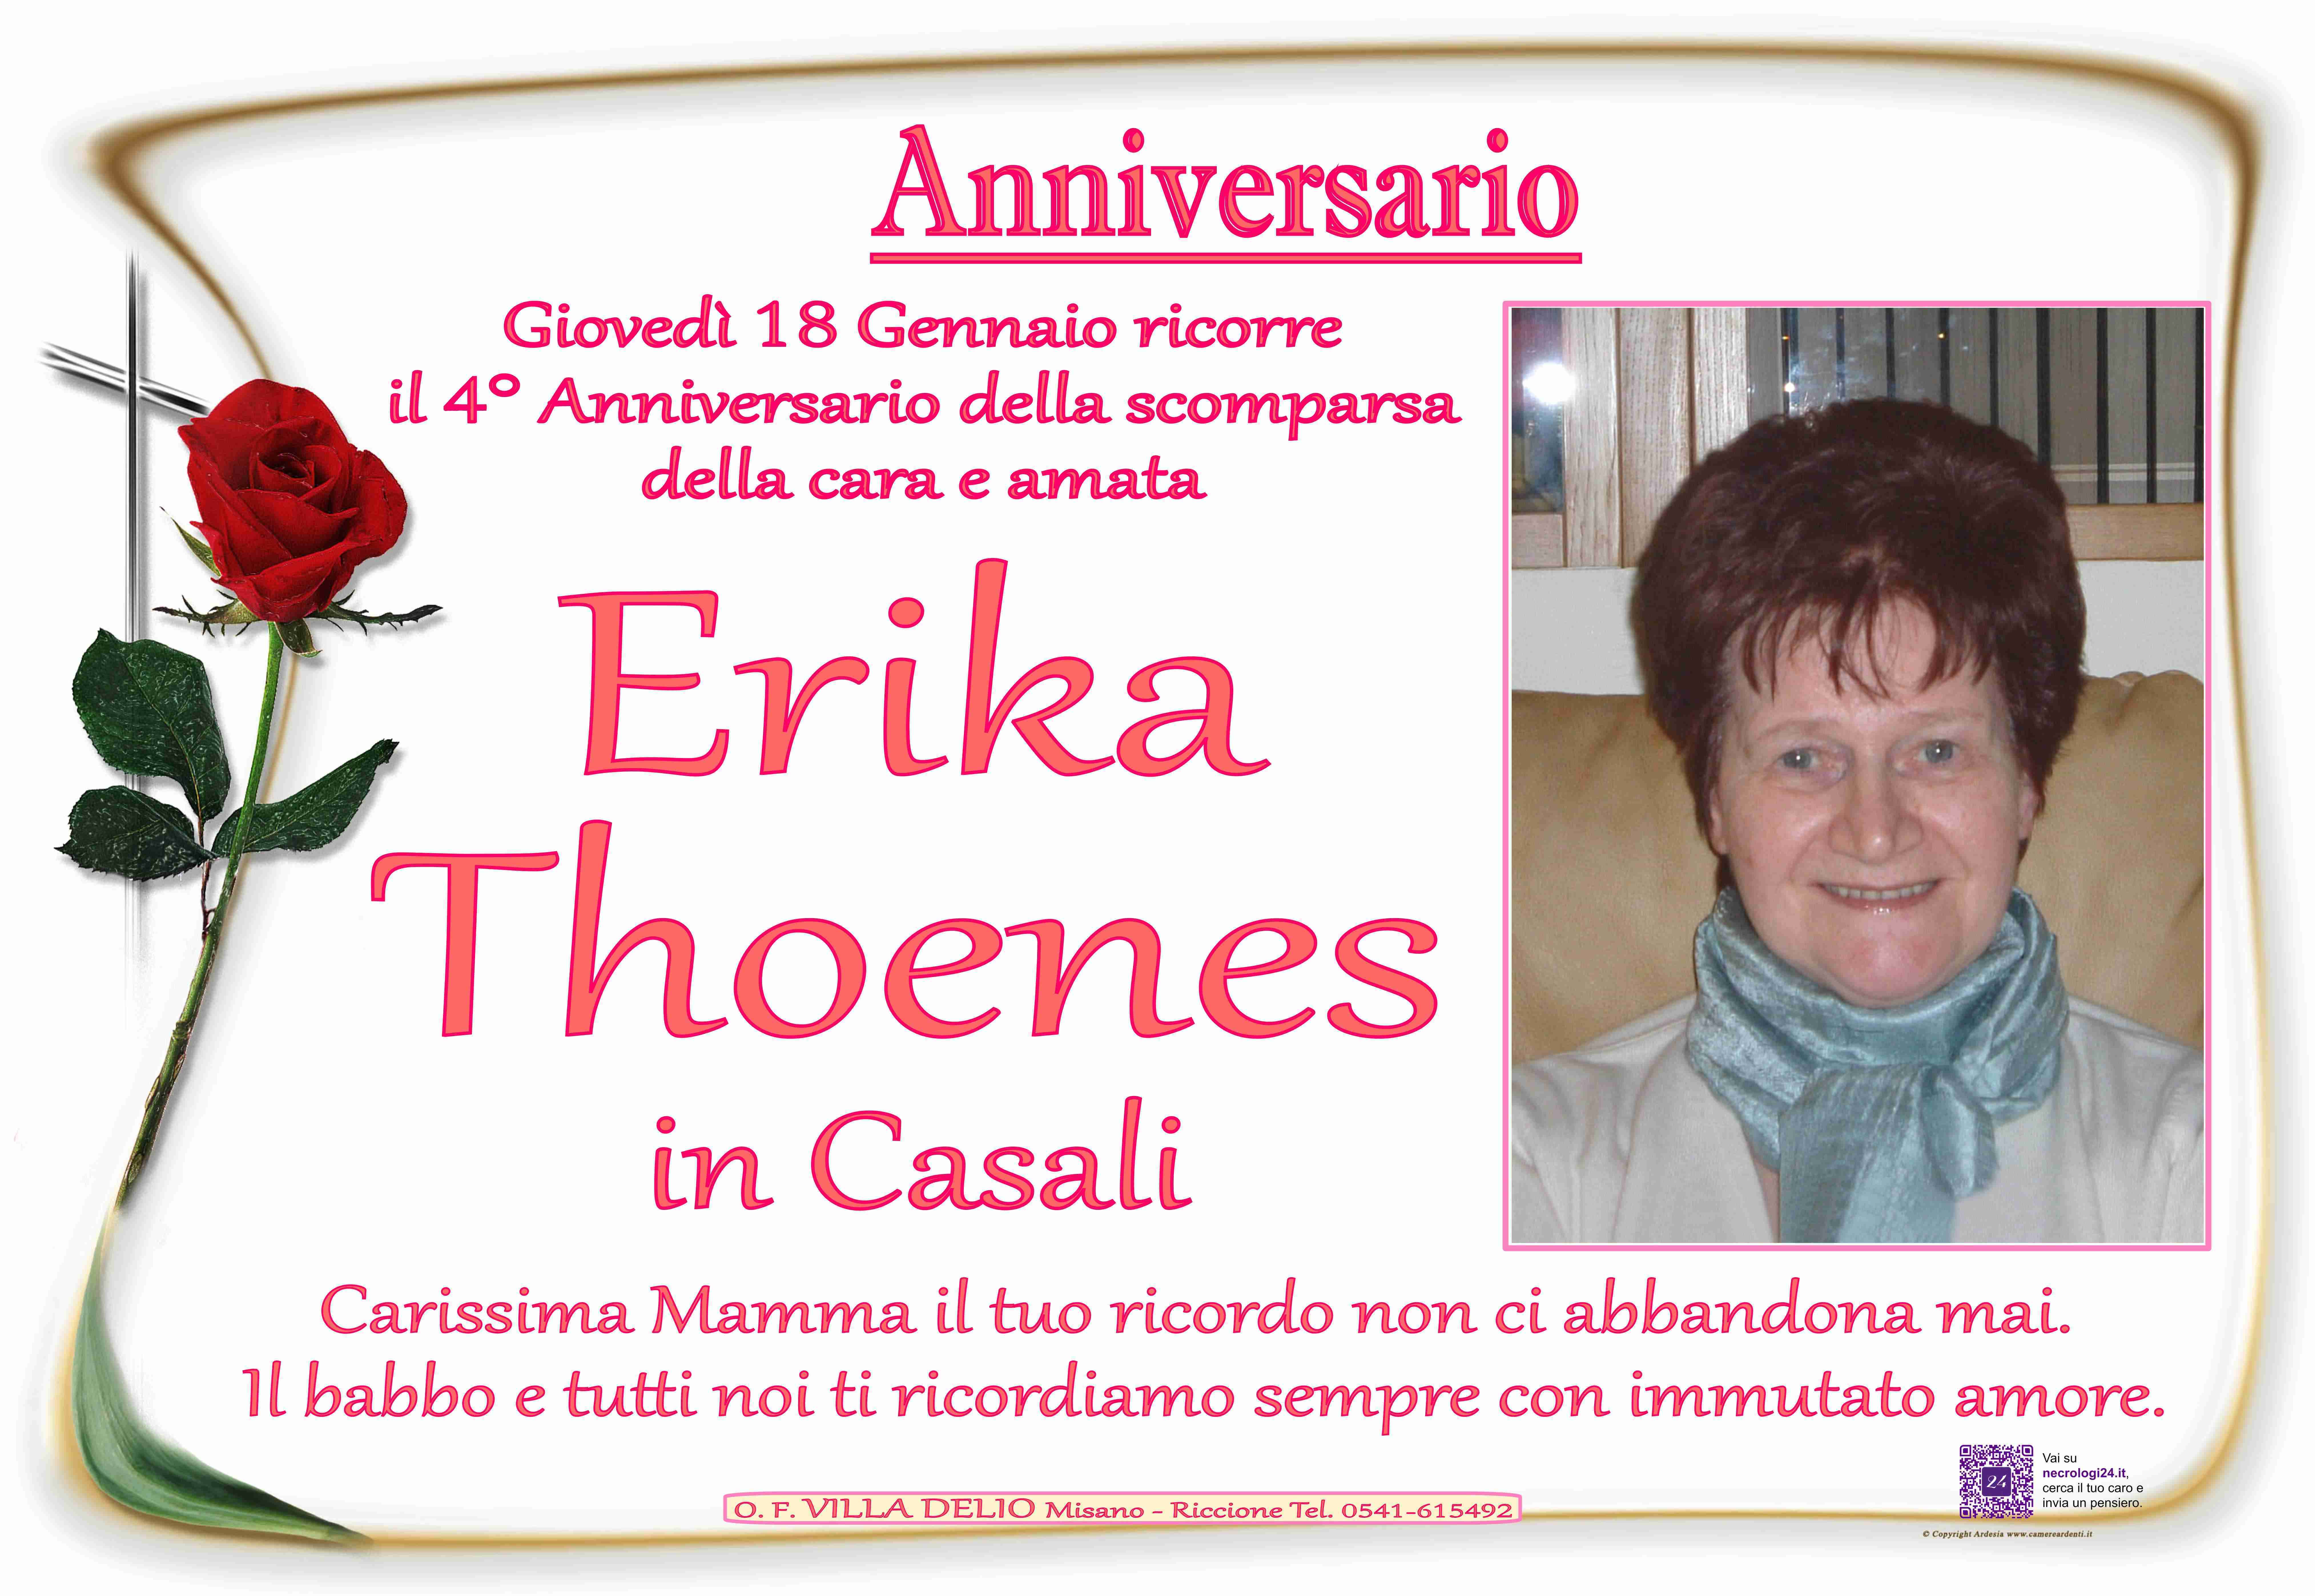 Erika Thoenes in Casali